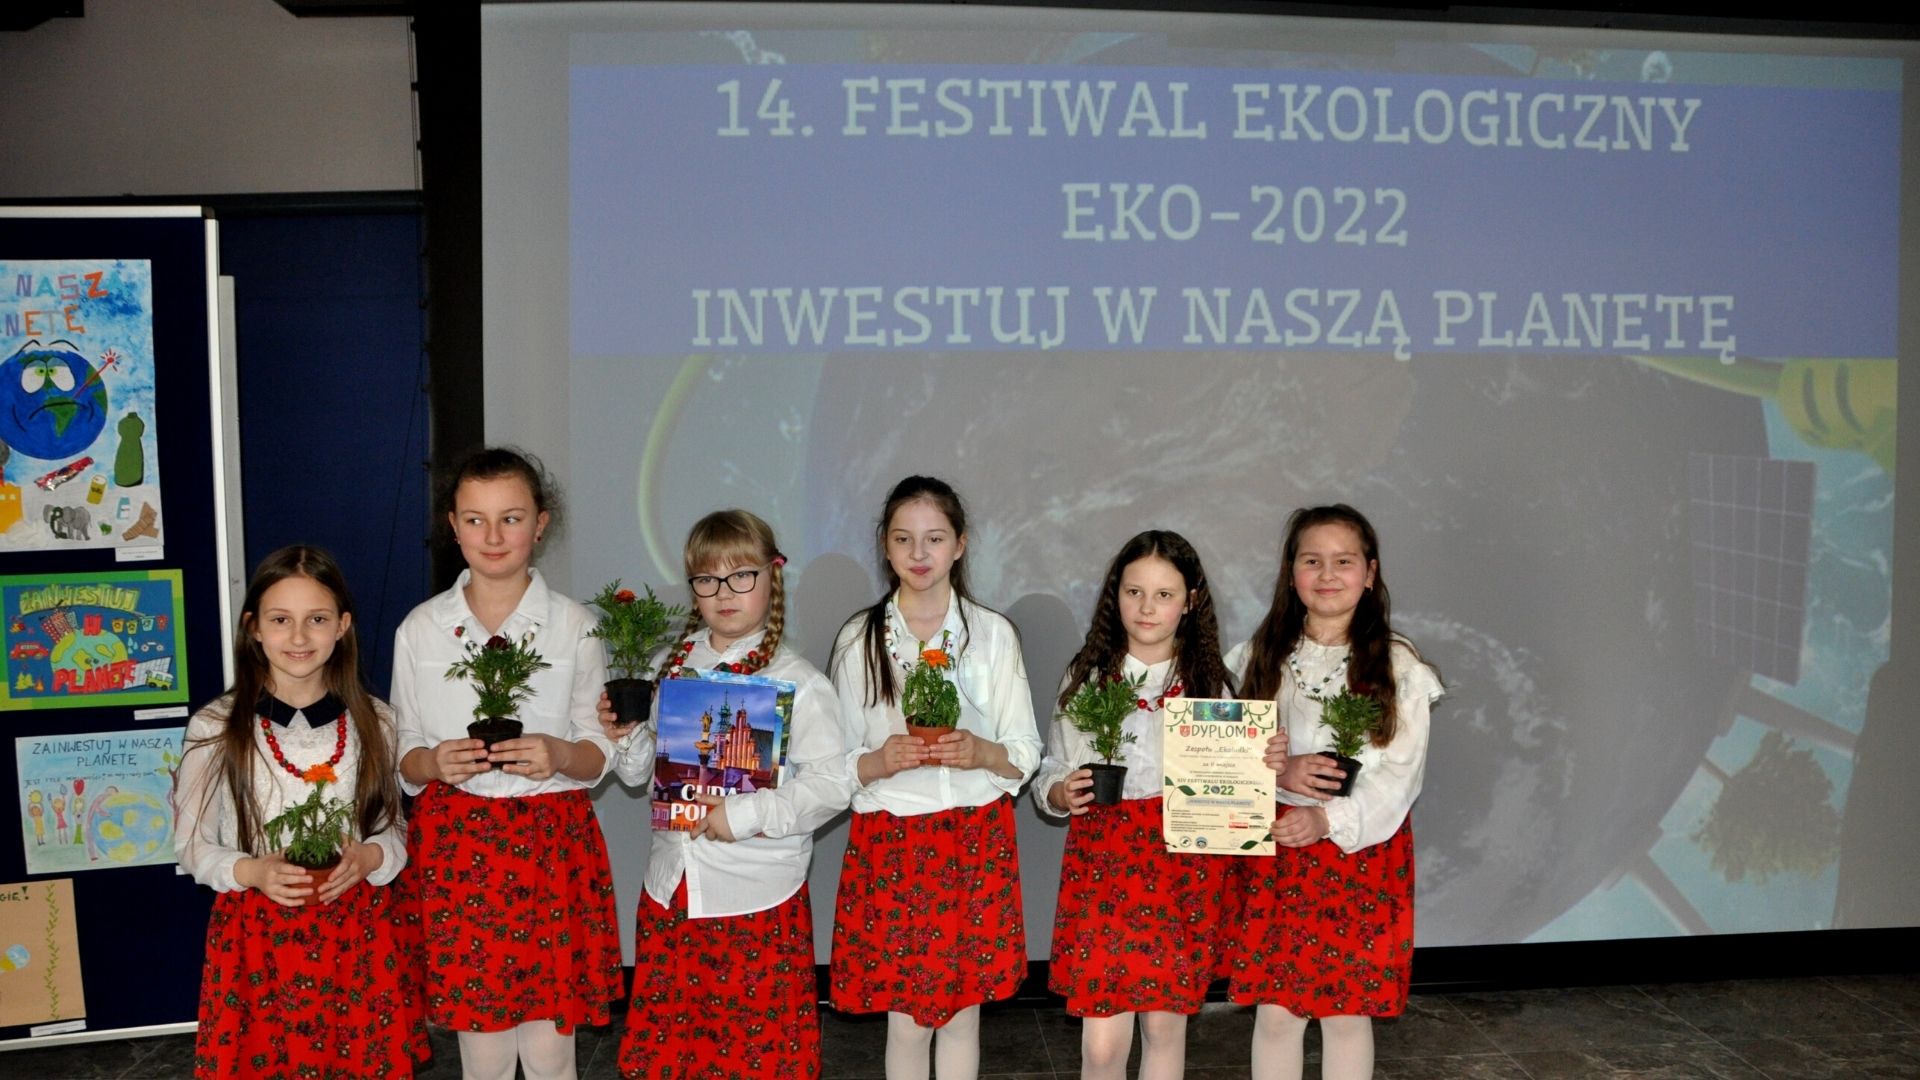 Obraz przedstawiający Festiwal Ekologiczny EKO 2022